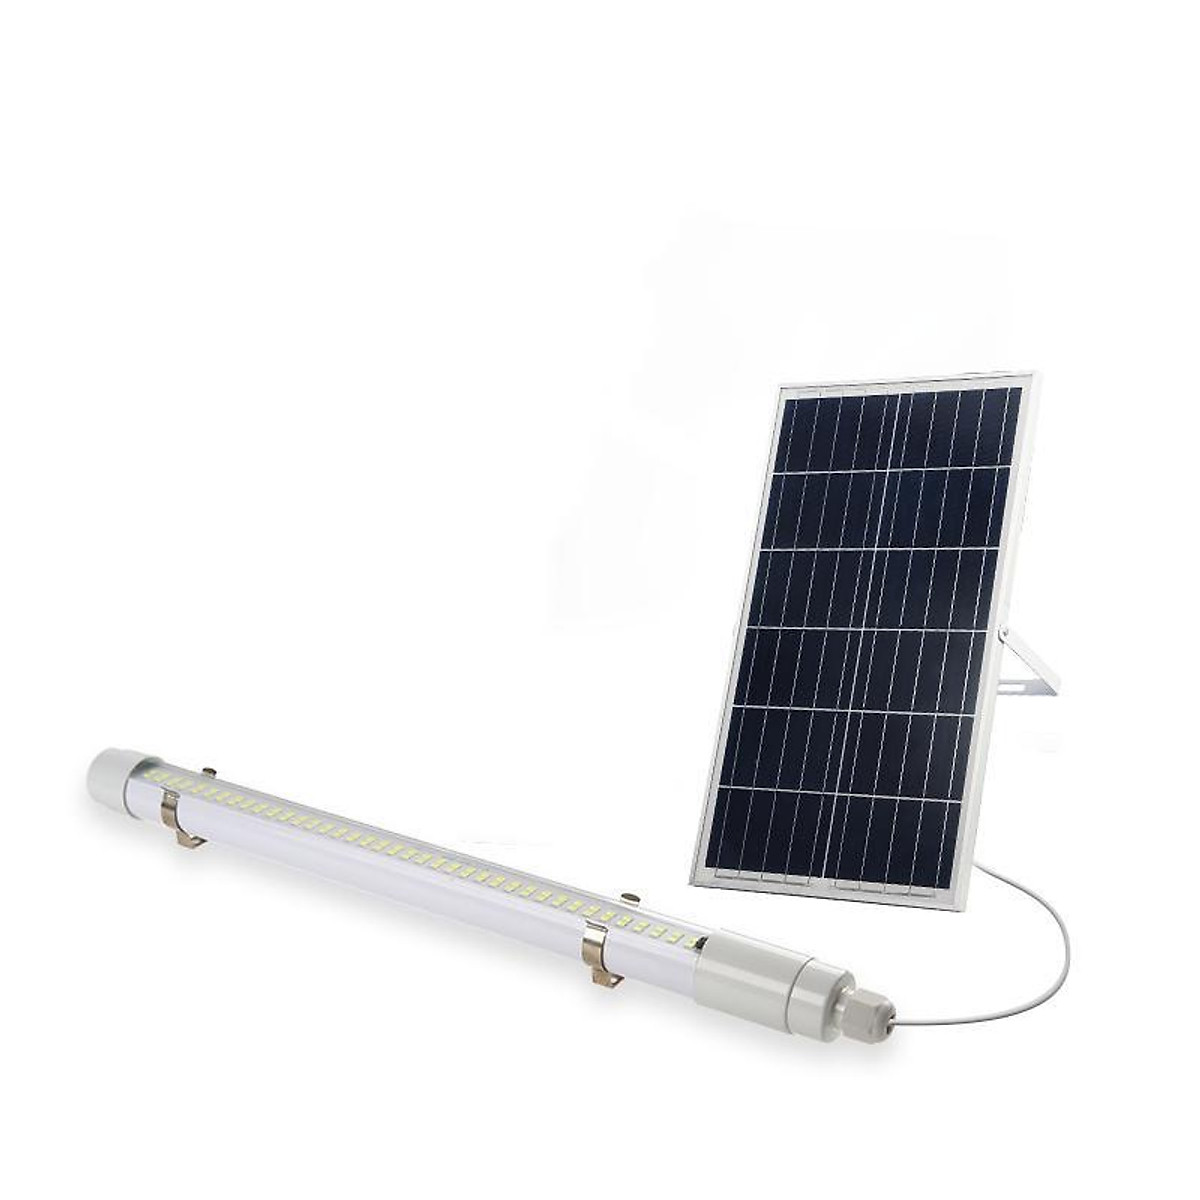 Đèn tuýp năng lượng mặt trời T8 công suất 100w (60cm) 150w (90cm) 200w (120cm), chỉ số kháng nước IP67 an toàn khi sử dụng